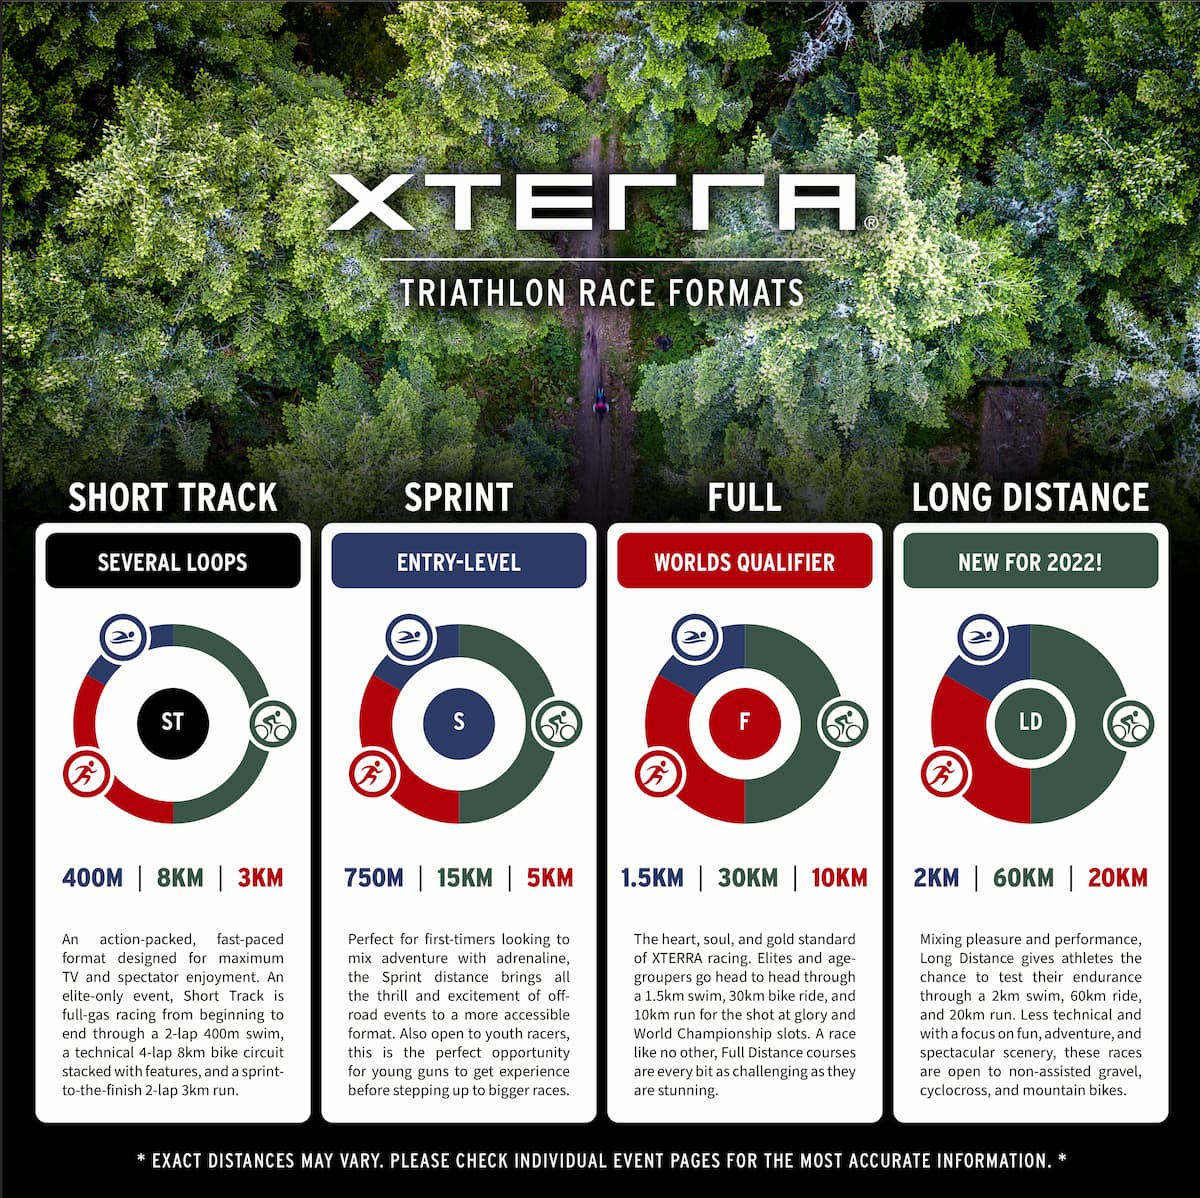 XTERRA lanza sus pruebas de larga distancia ,race_formats_xterra